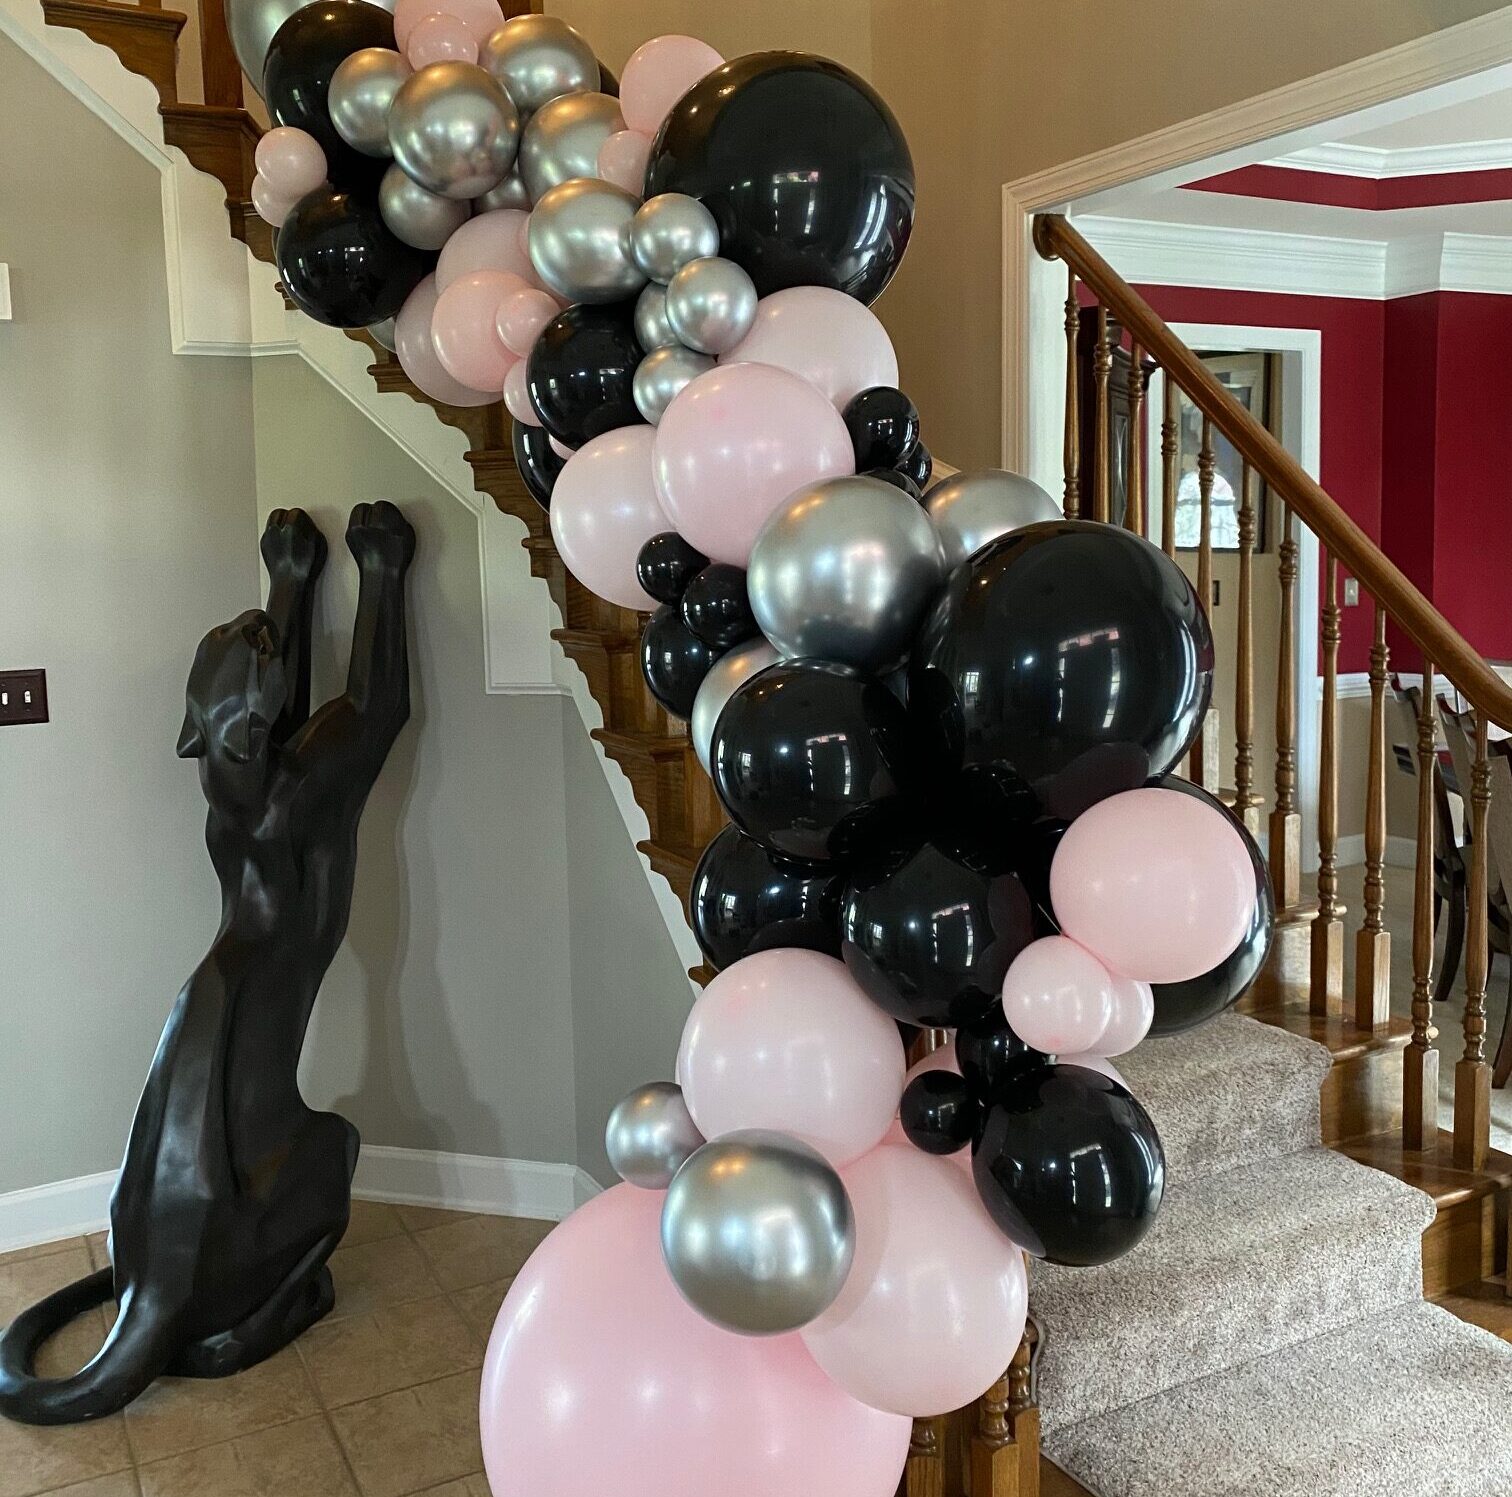 balloon decoration services, balloon decorations, balloon decorators, balloon artists, balloon arch st louis, balloon decorations saint louis